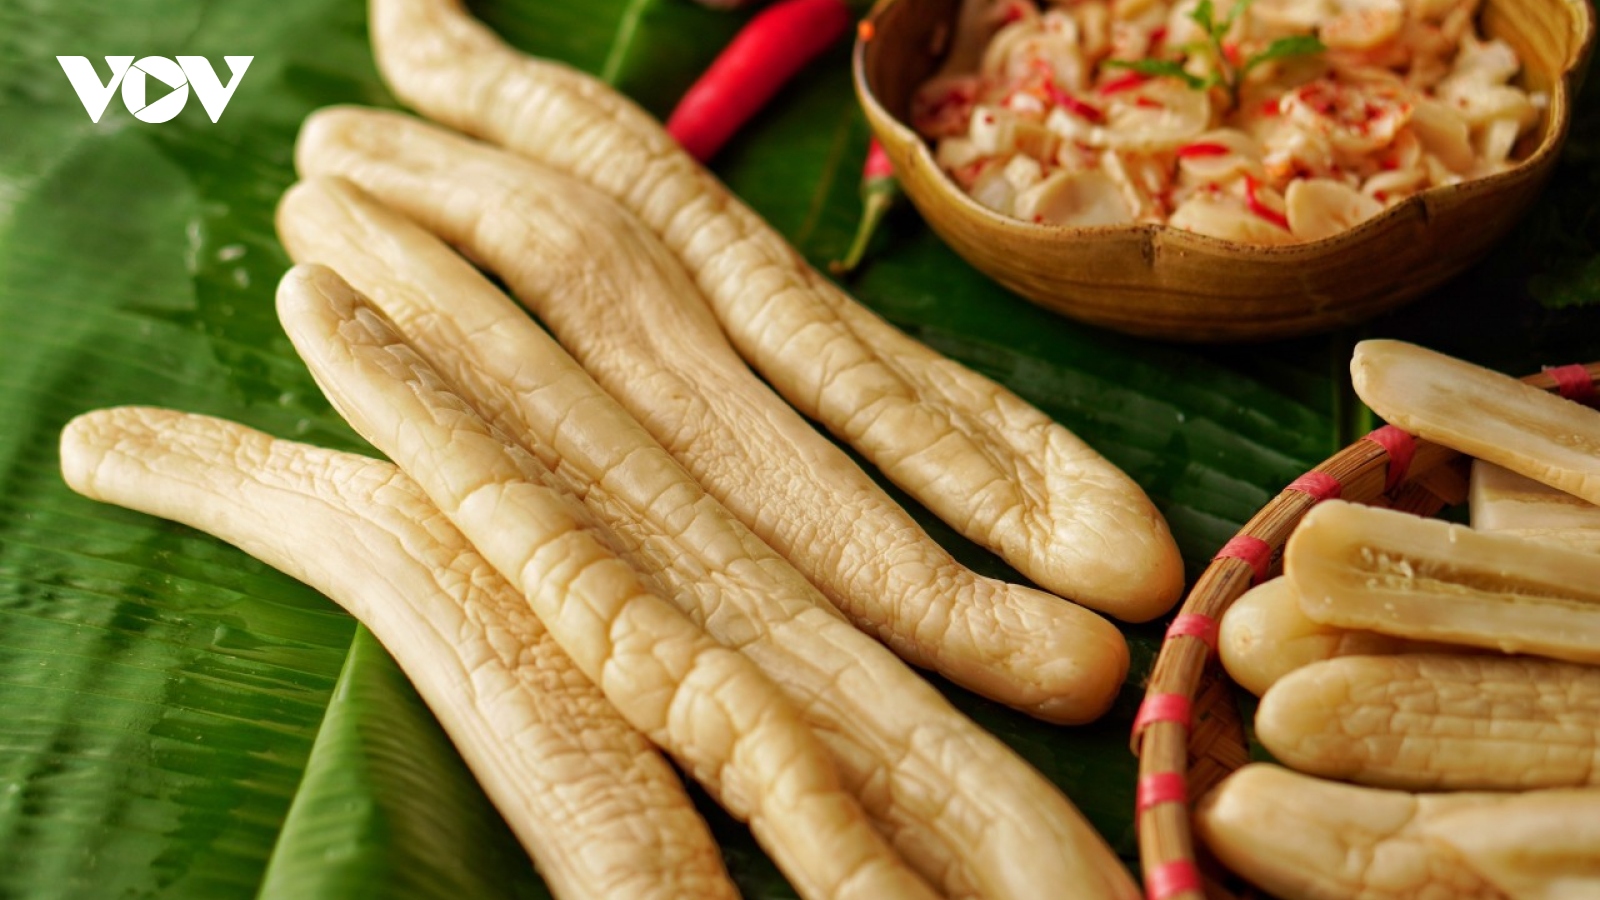 Dưa gang muối, món ăn đặc sản của Bắc Ninh được bảo hộ nhãn hiệu chứng nhận